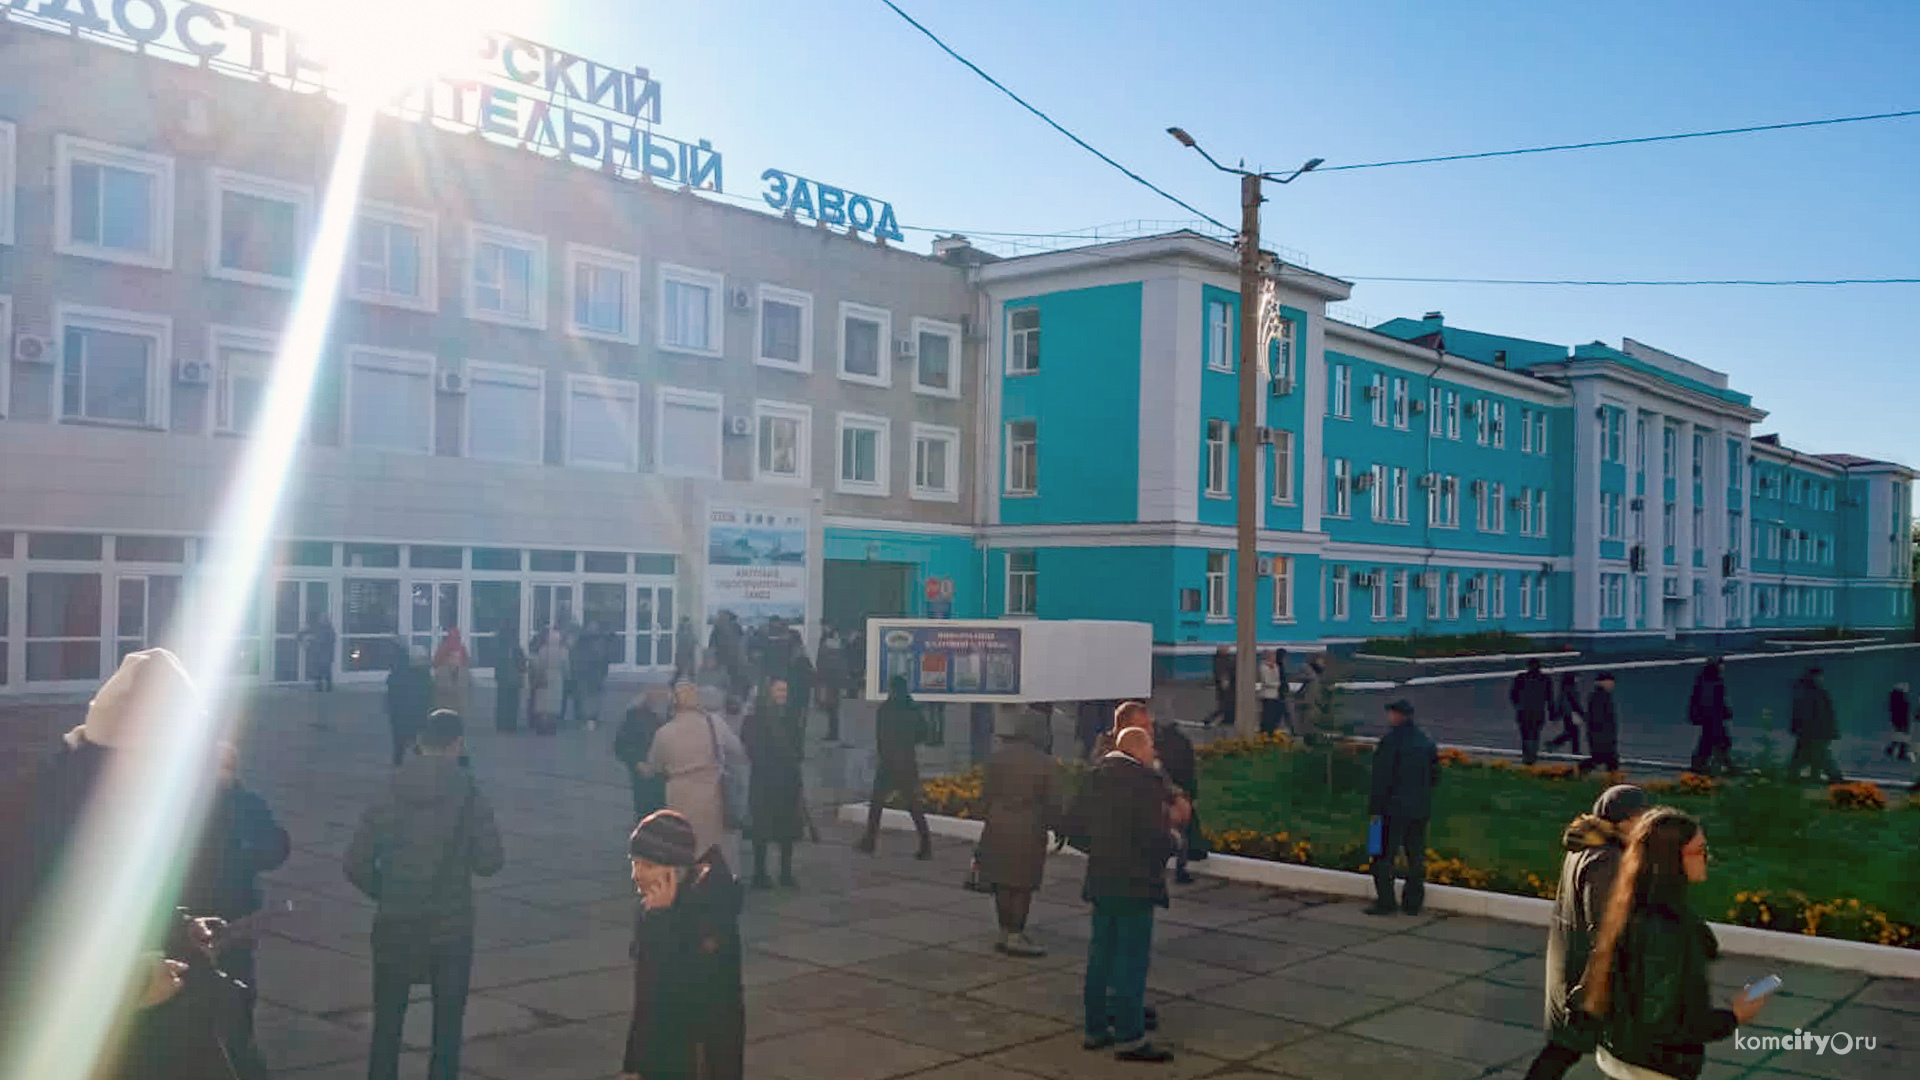 Амурский судостроительный завод в Комсомольске-на-Амуре эвакуируют 